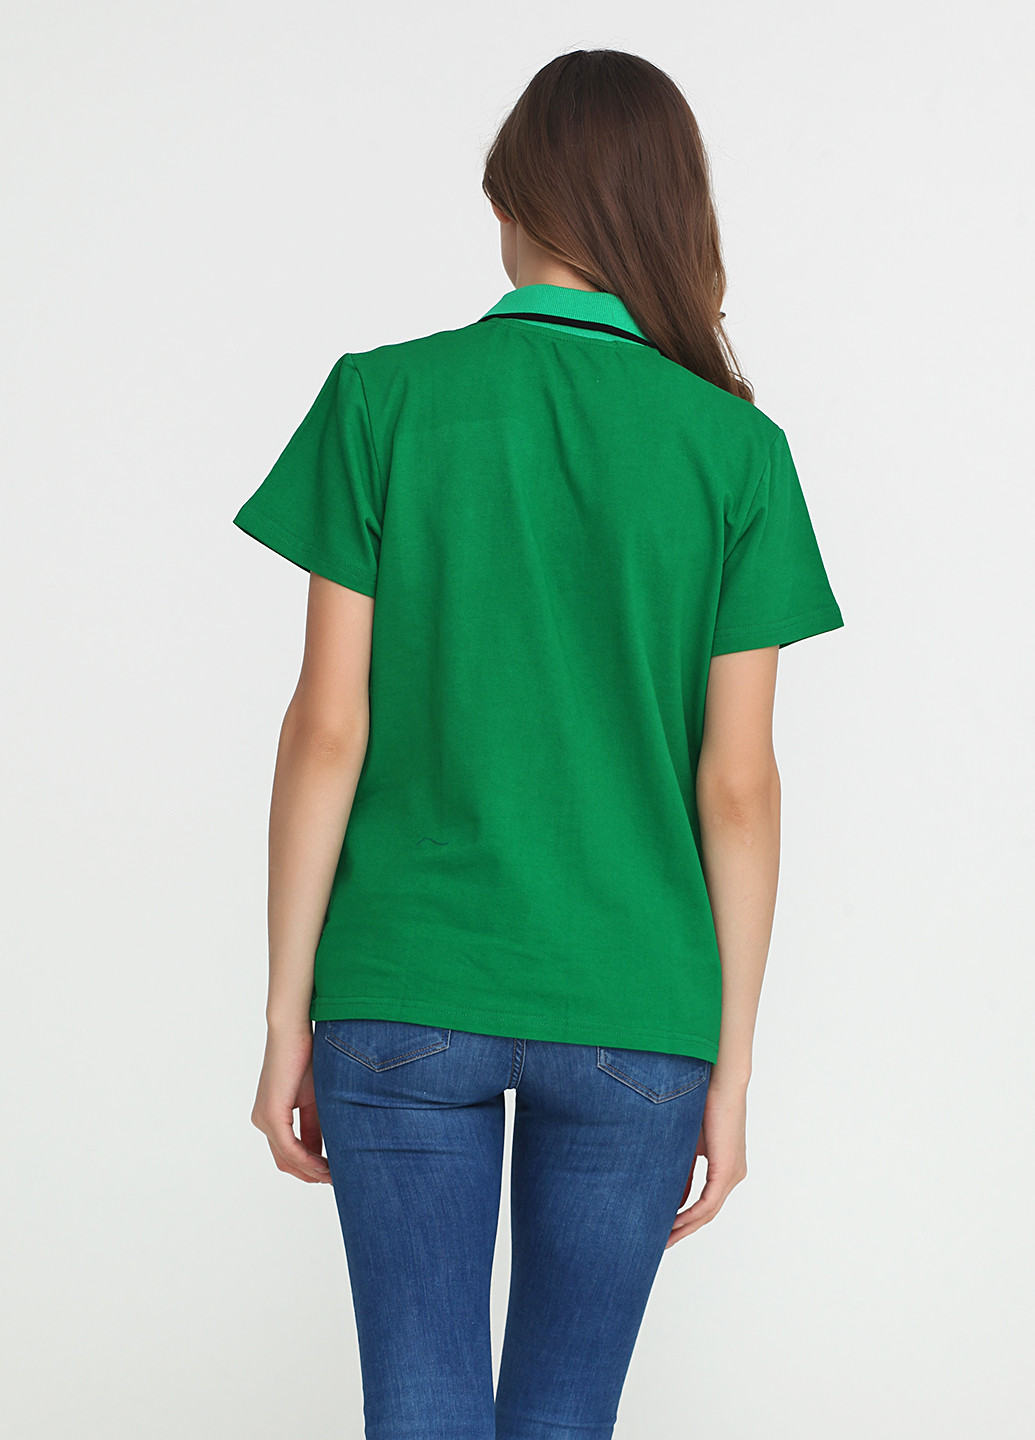 Зеленая женская футболка-поло Tryapos с надписью